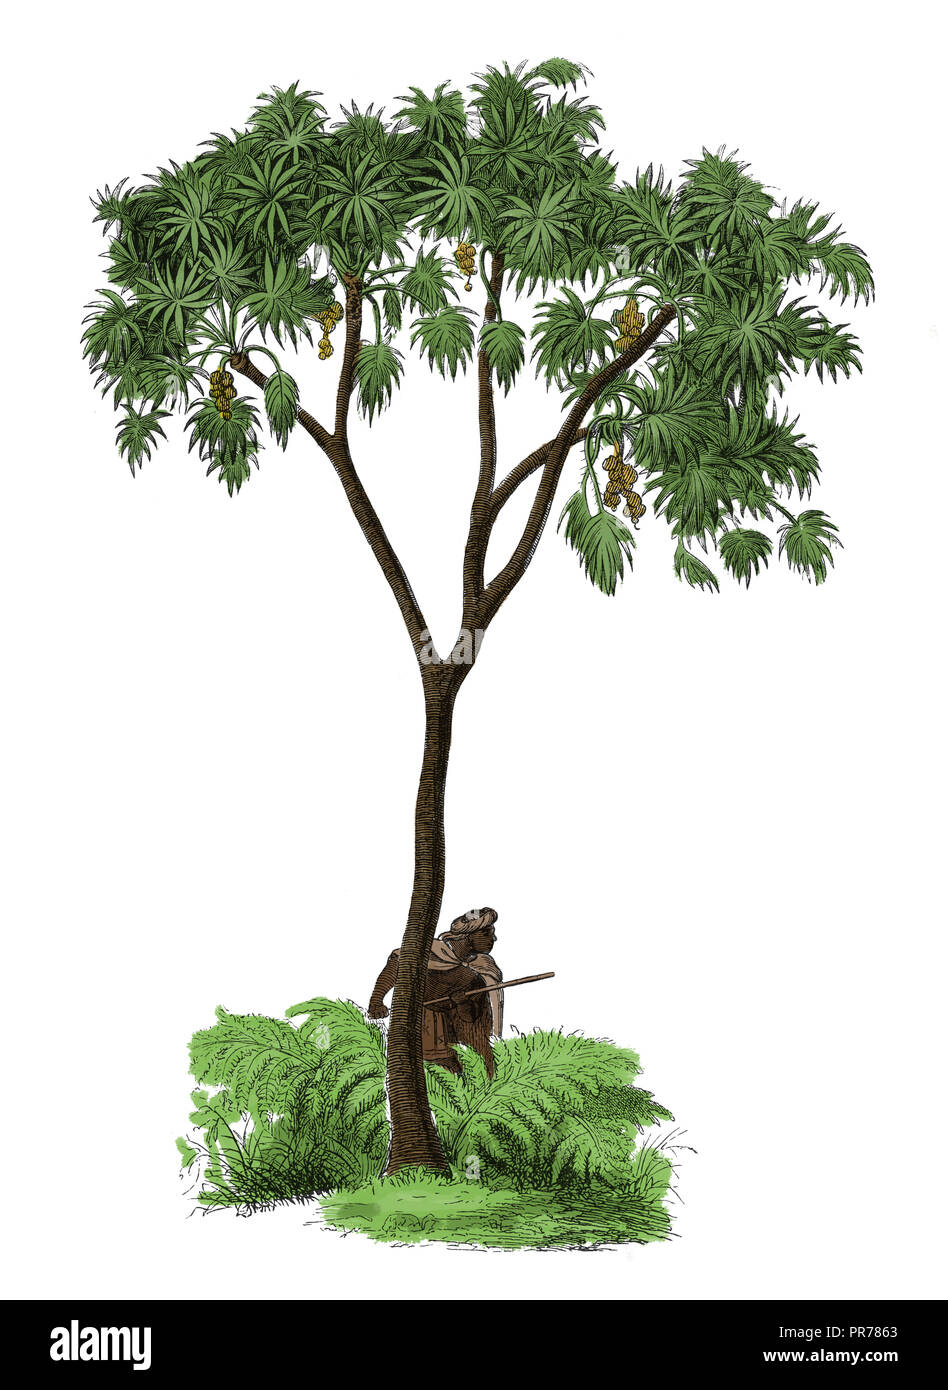 19ème siècle Illustration d'Hyphaene thebaica, connu sous le nom de palmier, arbre d'épice, doom palm - un type de palmier comestible avec fruits ovales. Publishe Banque D'Images